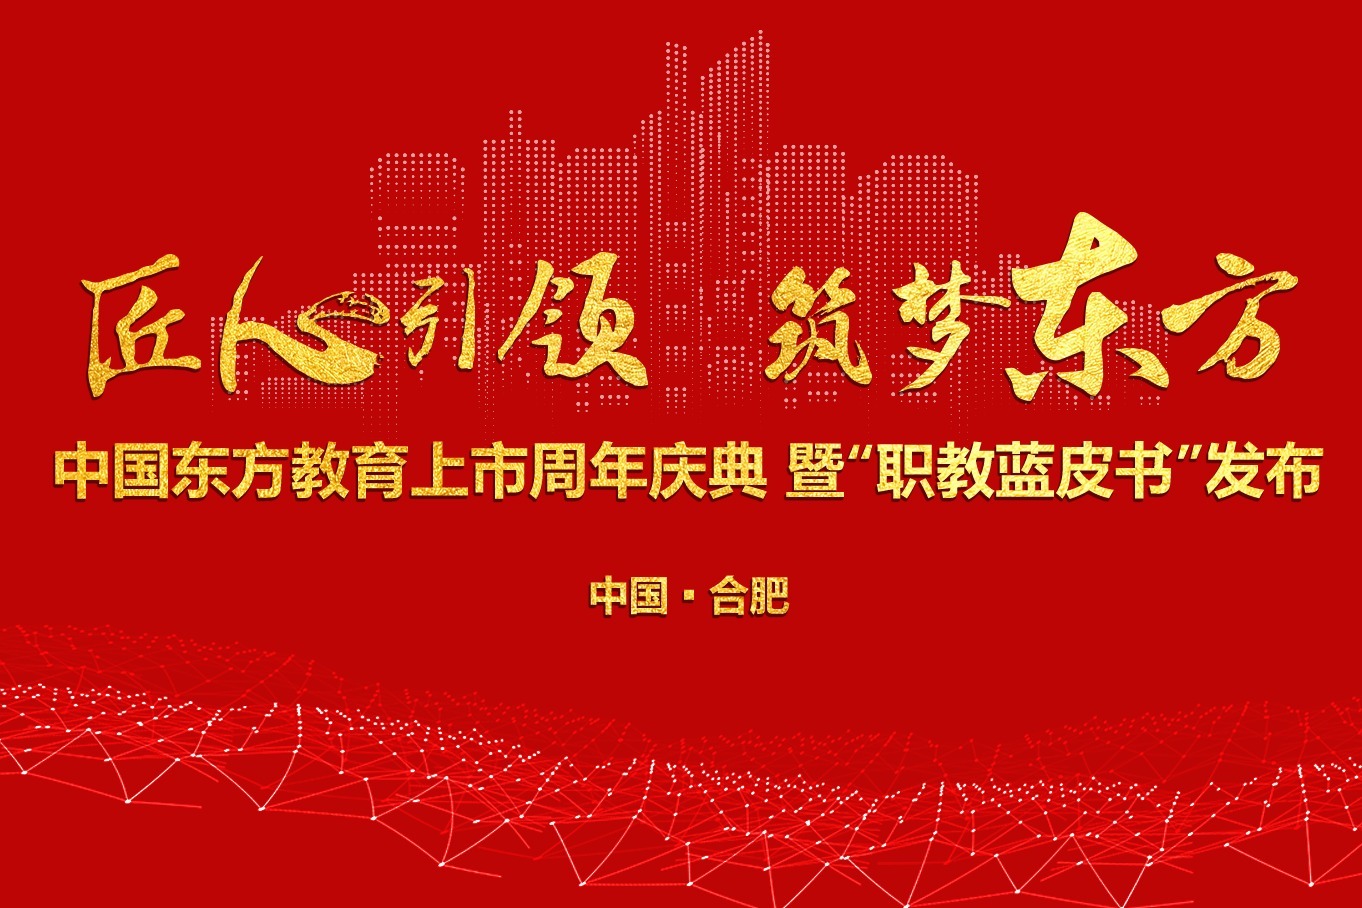 中国东方教育上市周年庆典暨“职教蓝皮书”发布亮点回顾